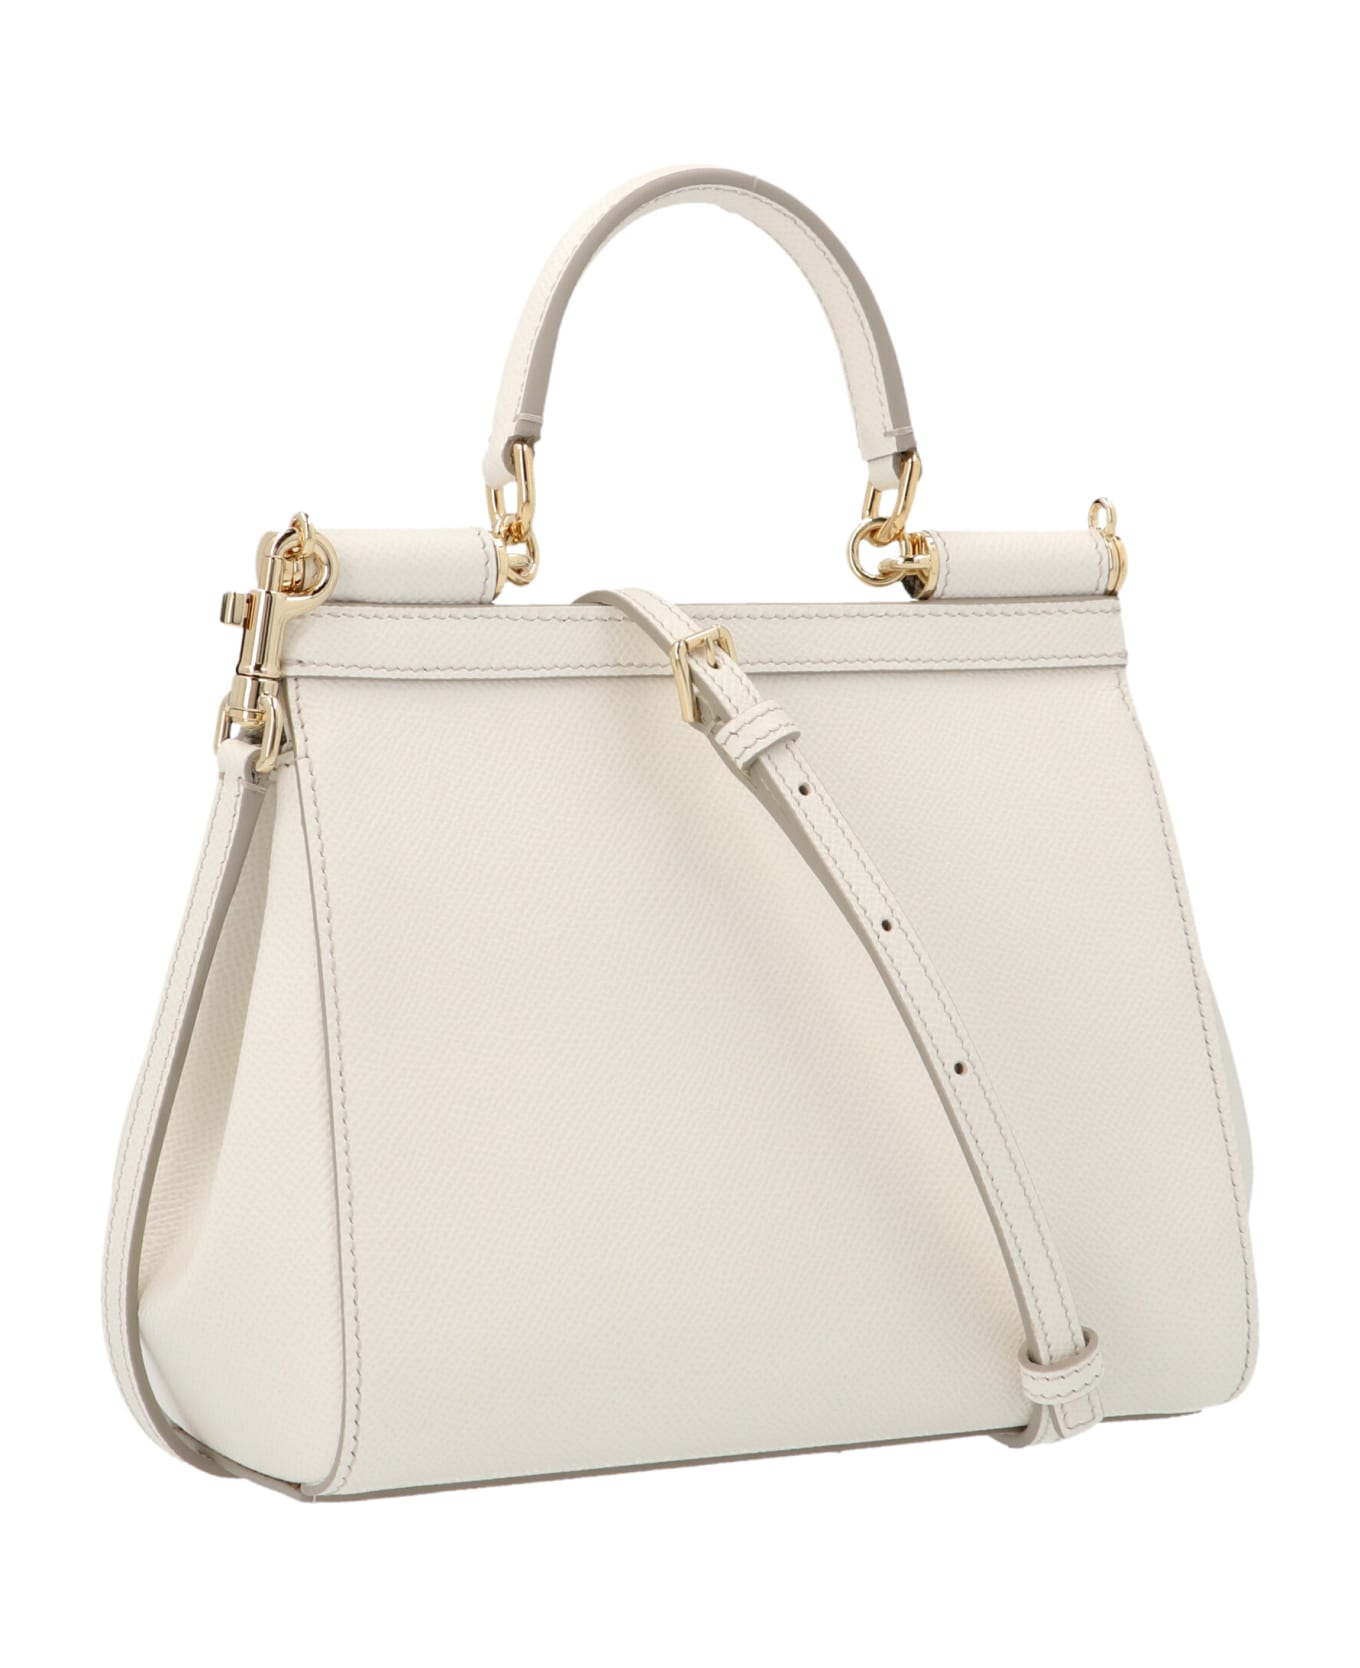 Dolce & Gabbana Sicily Handbag Mini - White トートバッグ